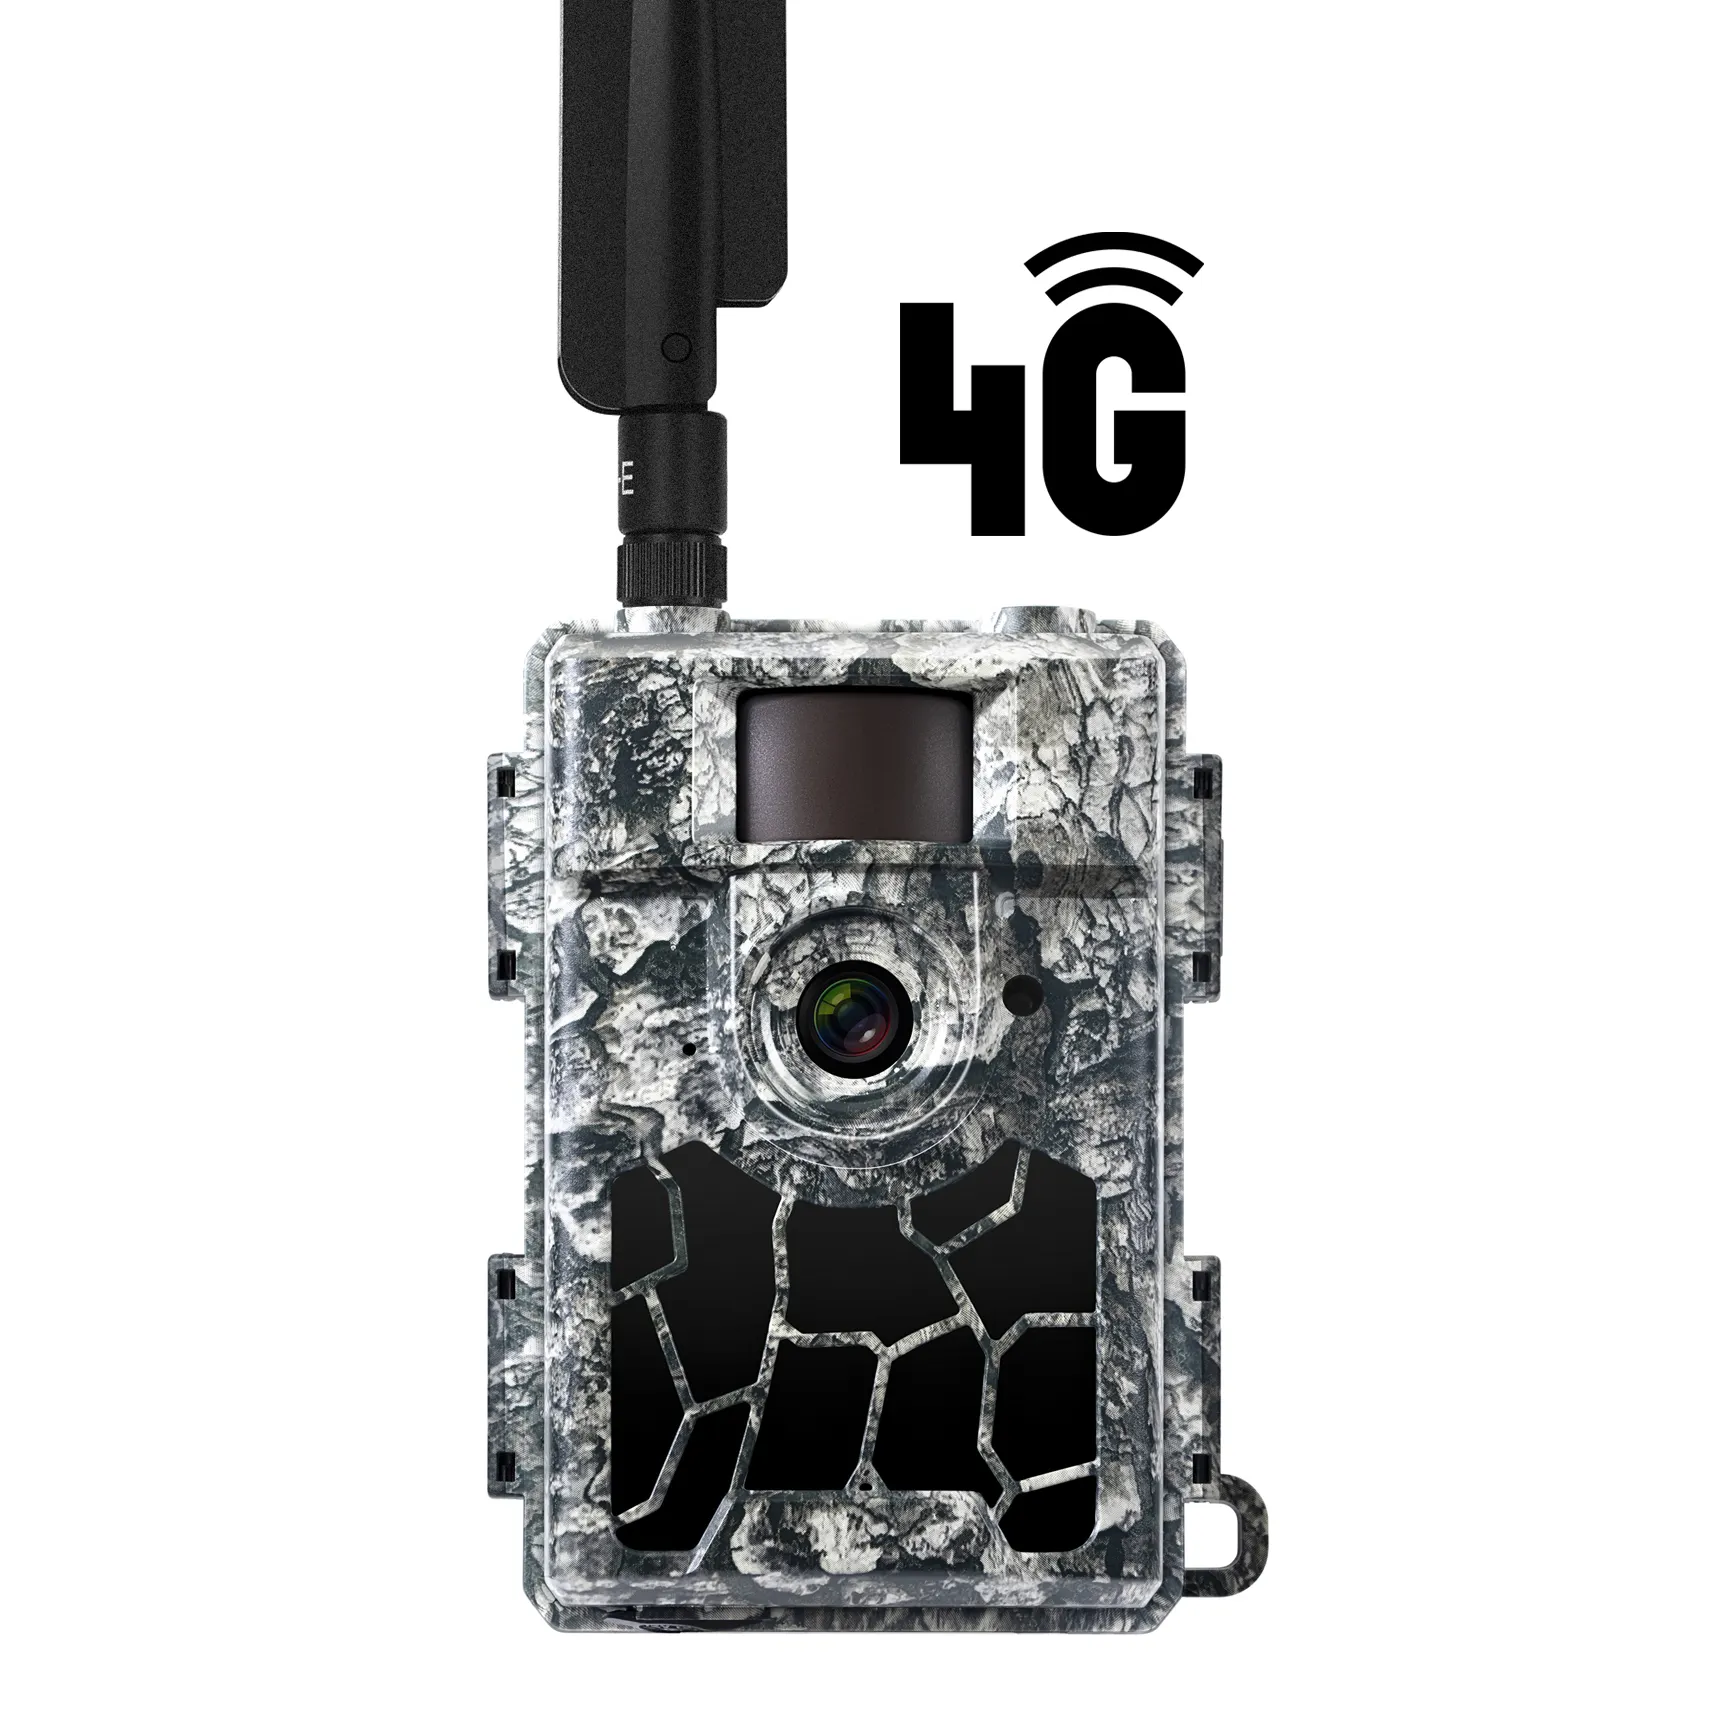 Willfine Câmera de segurança para trilha de caça, aplicativo em nuvem 4G LTE sem fio para uso ao ar livre, câmera de 24MP